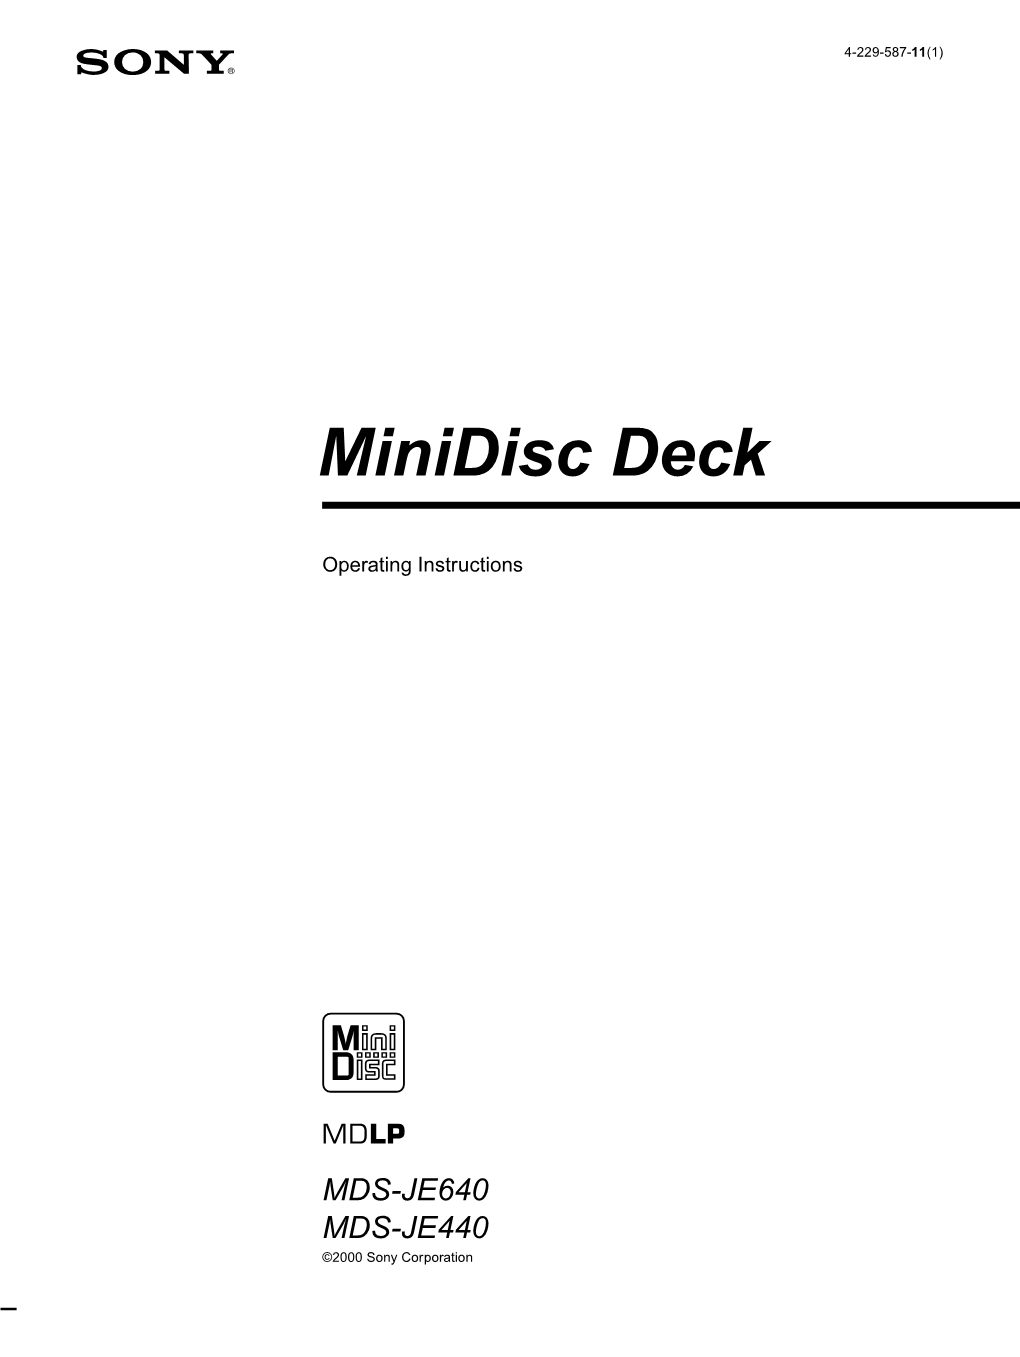 Minidisc Deck